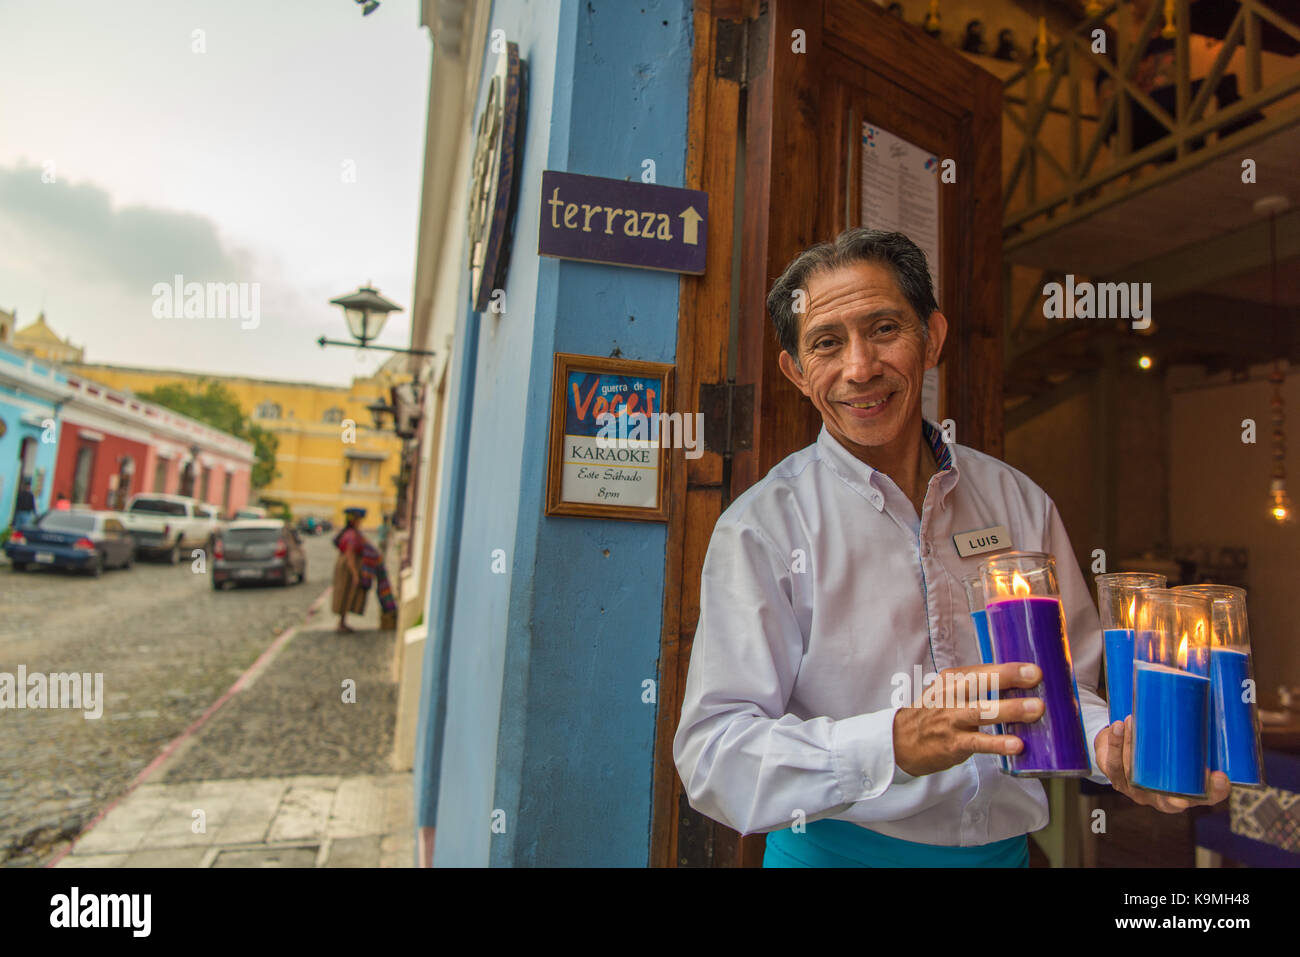 Un camarero comparte una cálida sonrisa mientras prepara su restaurante para los huéspedes de la cena. Antigua, Guatemala Foto de stock